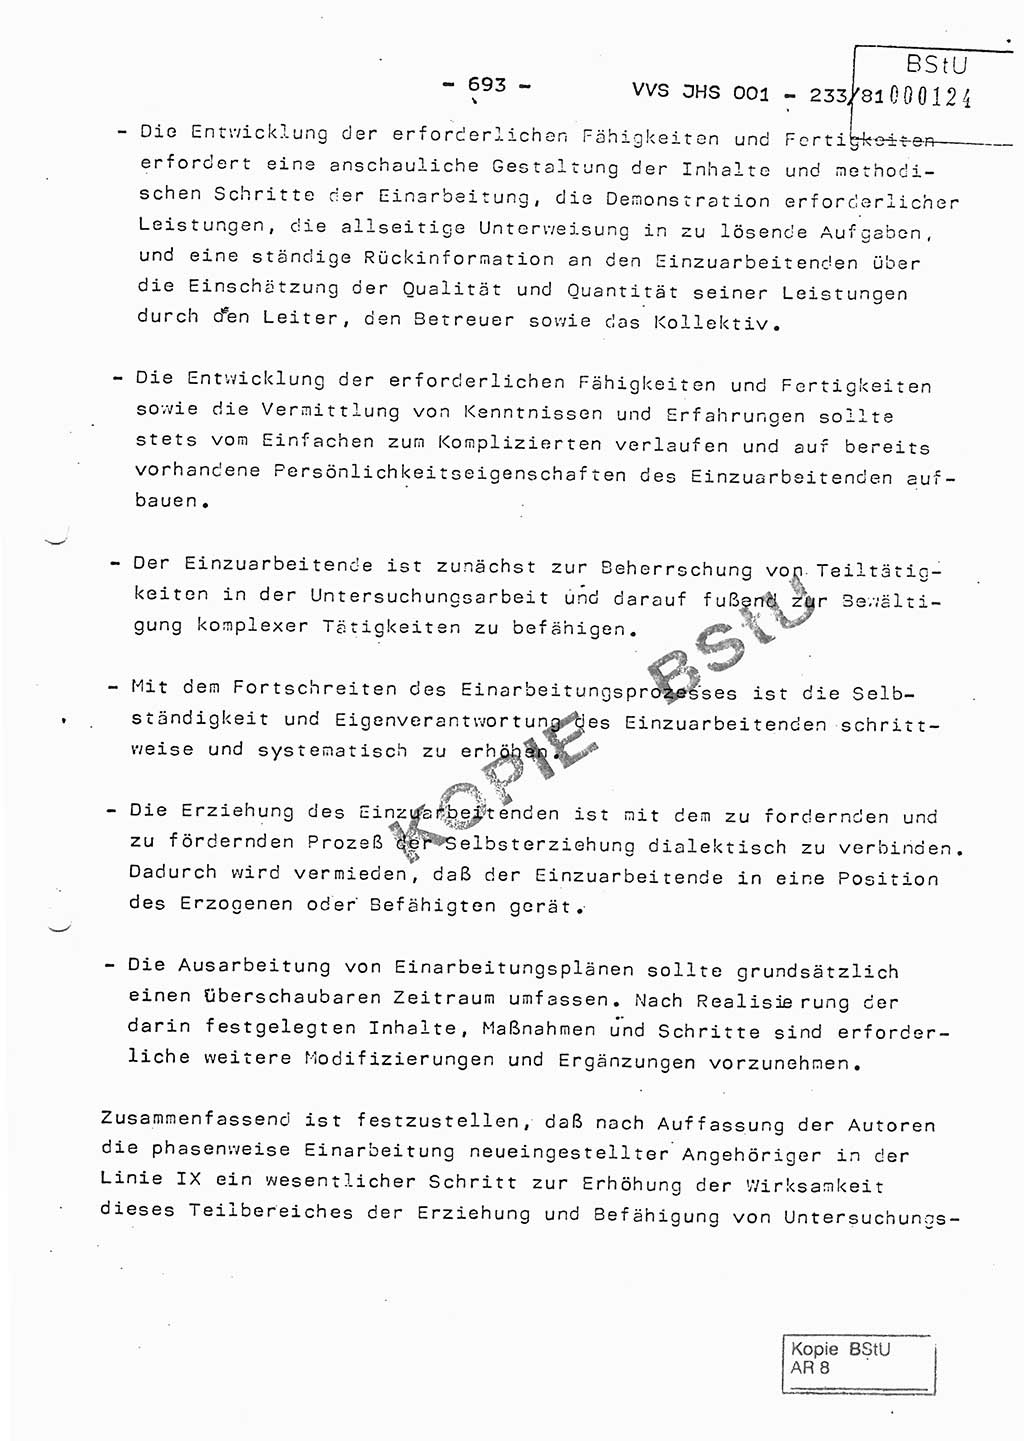 Dissertation Oberstleutnant Horst Zank (JHS), Oberstleutnant Dr. Karl-Heinz Knoblauch (JHS), Oberstleutnant Gustav-Adolf Kowalewski (HA Ⅸ), Oberstleutnant Wolfgang Plötner (HA Ⅸ), Ministerium für Staatssicherheit (MfS) [Deutsche Demokratische Republik (DDR)], Juristische Hochschule (JHS), Vertrauliche Verschlußsache (VVS) o001-233/81, Potsdam 1981, Blatt 693 (Diss. MfS DDR JHS VVS o001-233/81 1981, Bl. 693)